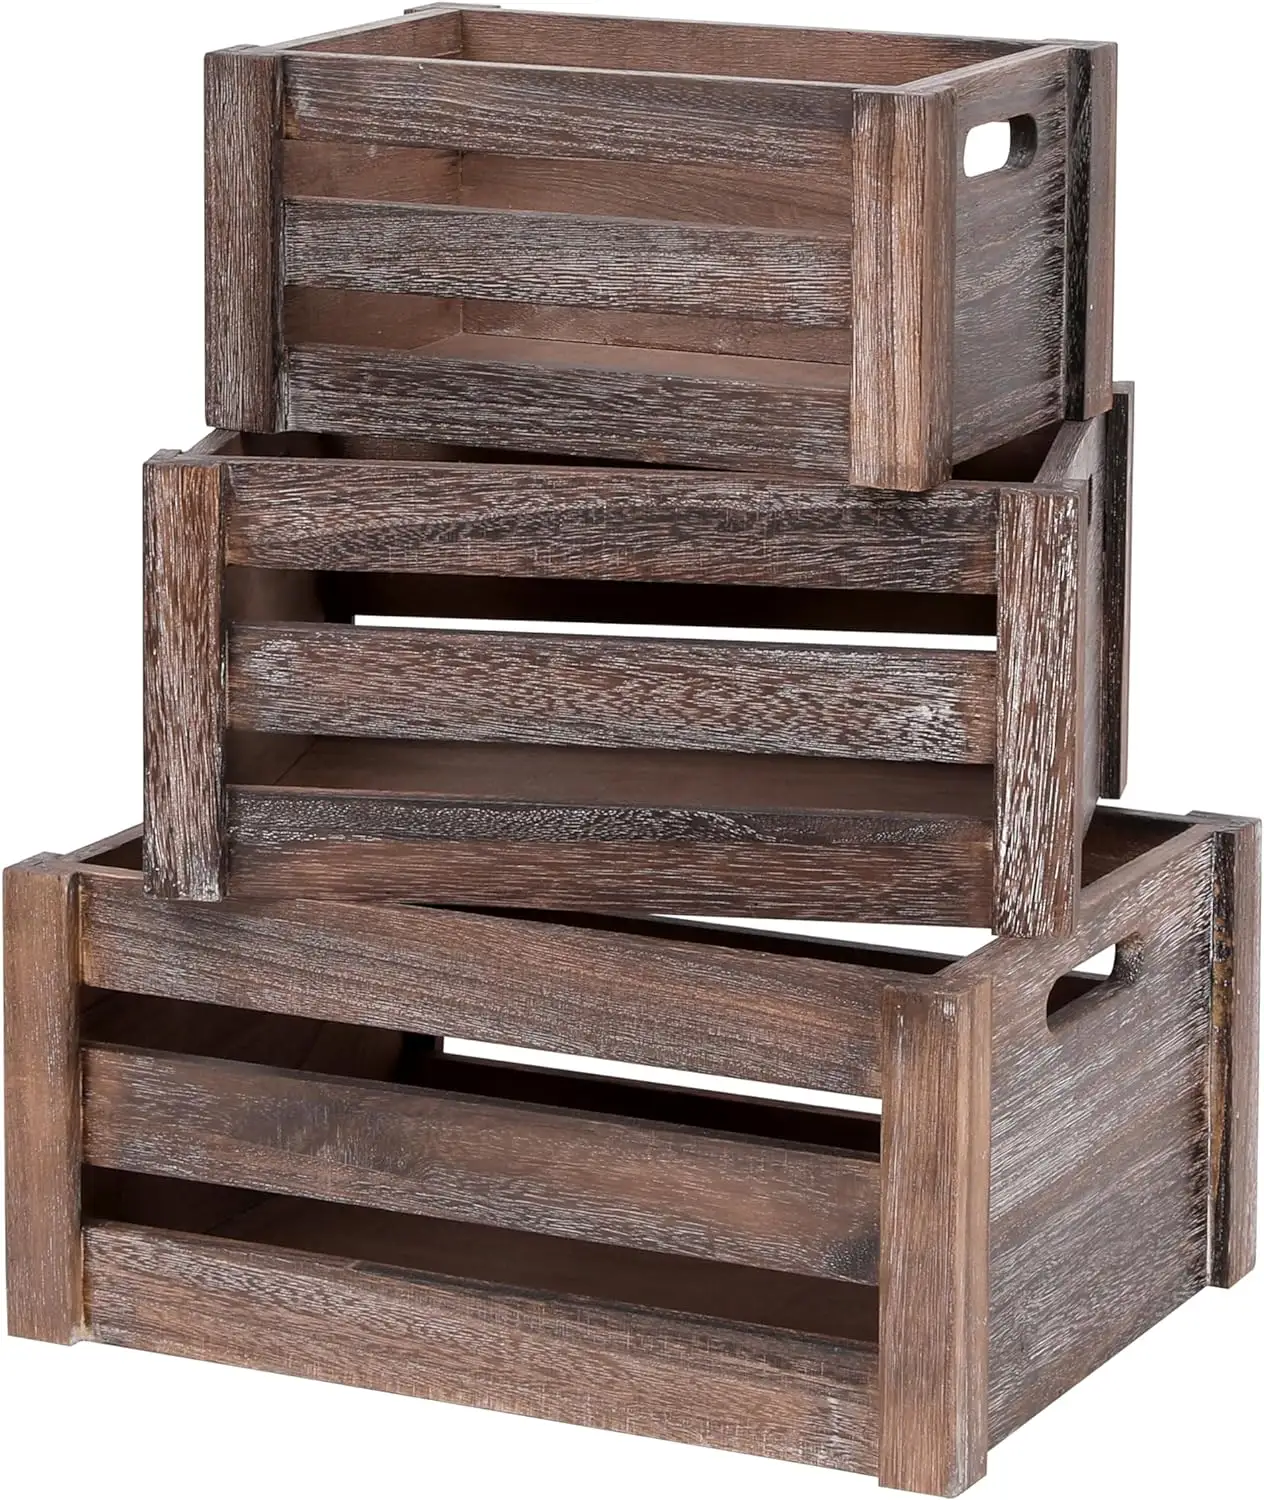 صندوق خشبي للمطبخ وغرفة المعيشة والمكتب والحمام صندوق خشبي من خشب البامبو مخصص صندوق تخزين